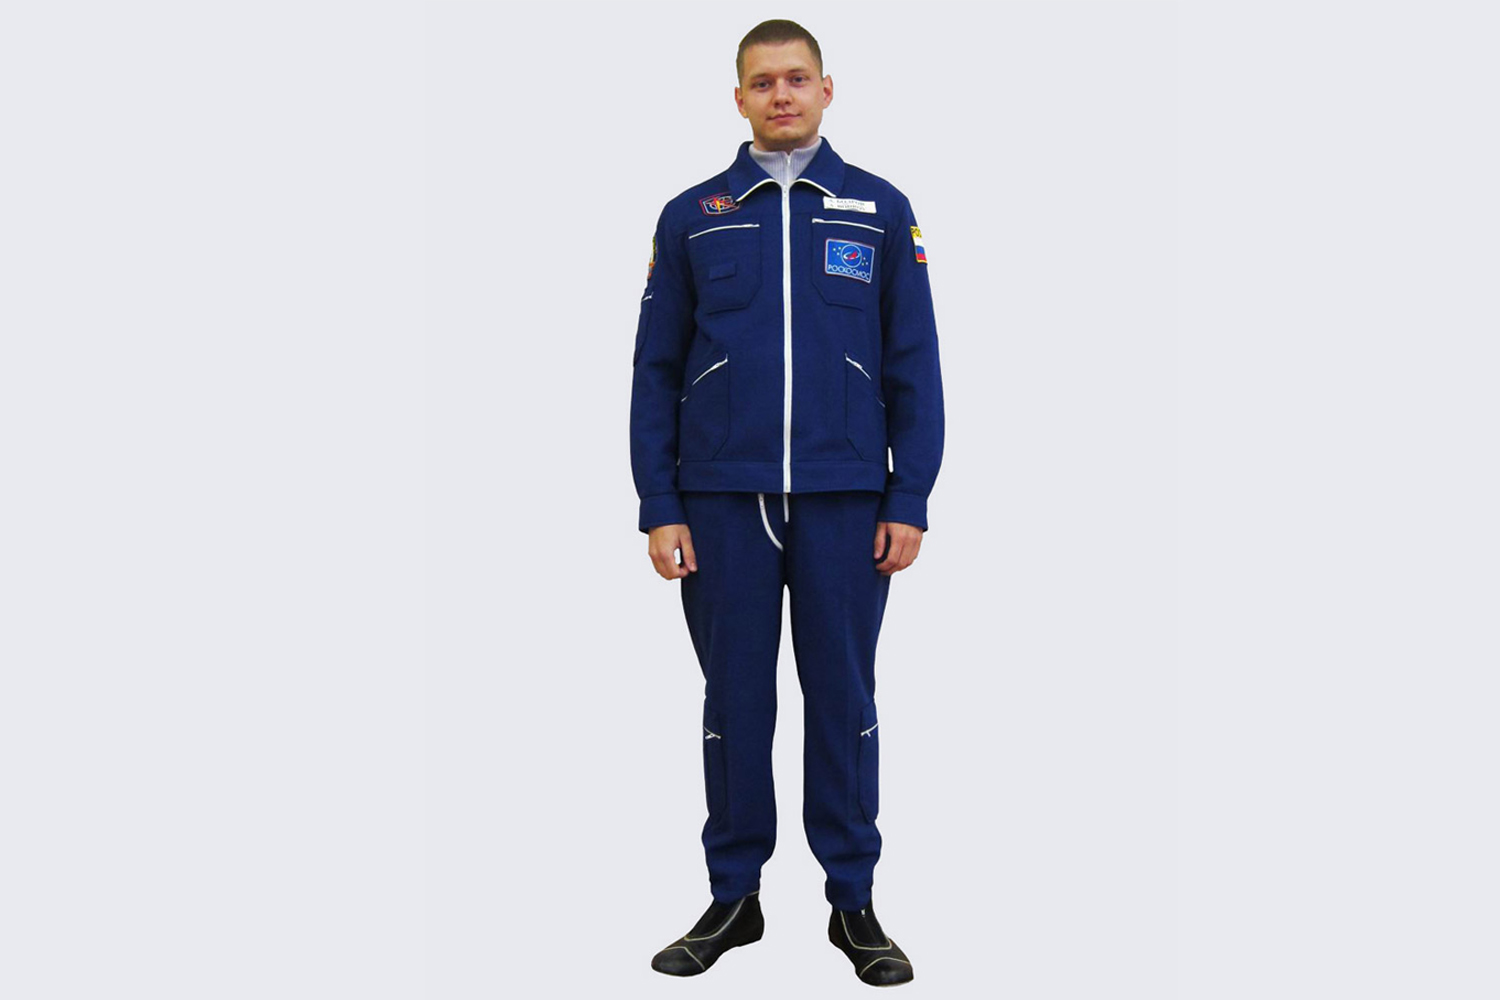 PK-14 คือ Flight suit คอลเลคชั่นล่าสุดจาก NPO SVEZDA ที่เน้นเรื่องความปลอดภัยมากขึ้น ในขณะเดียวกันก็ยังไม่ทิ้งความสบาย โดยเสื้อด้านในเป็นผ้าถัก รองรับอุณภูมิระดับ 18ºC